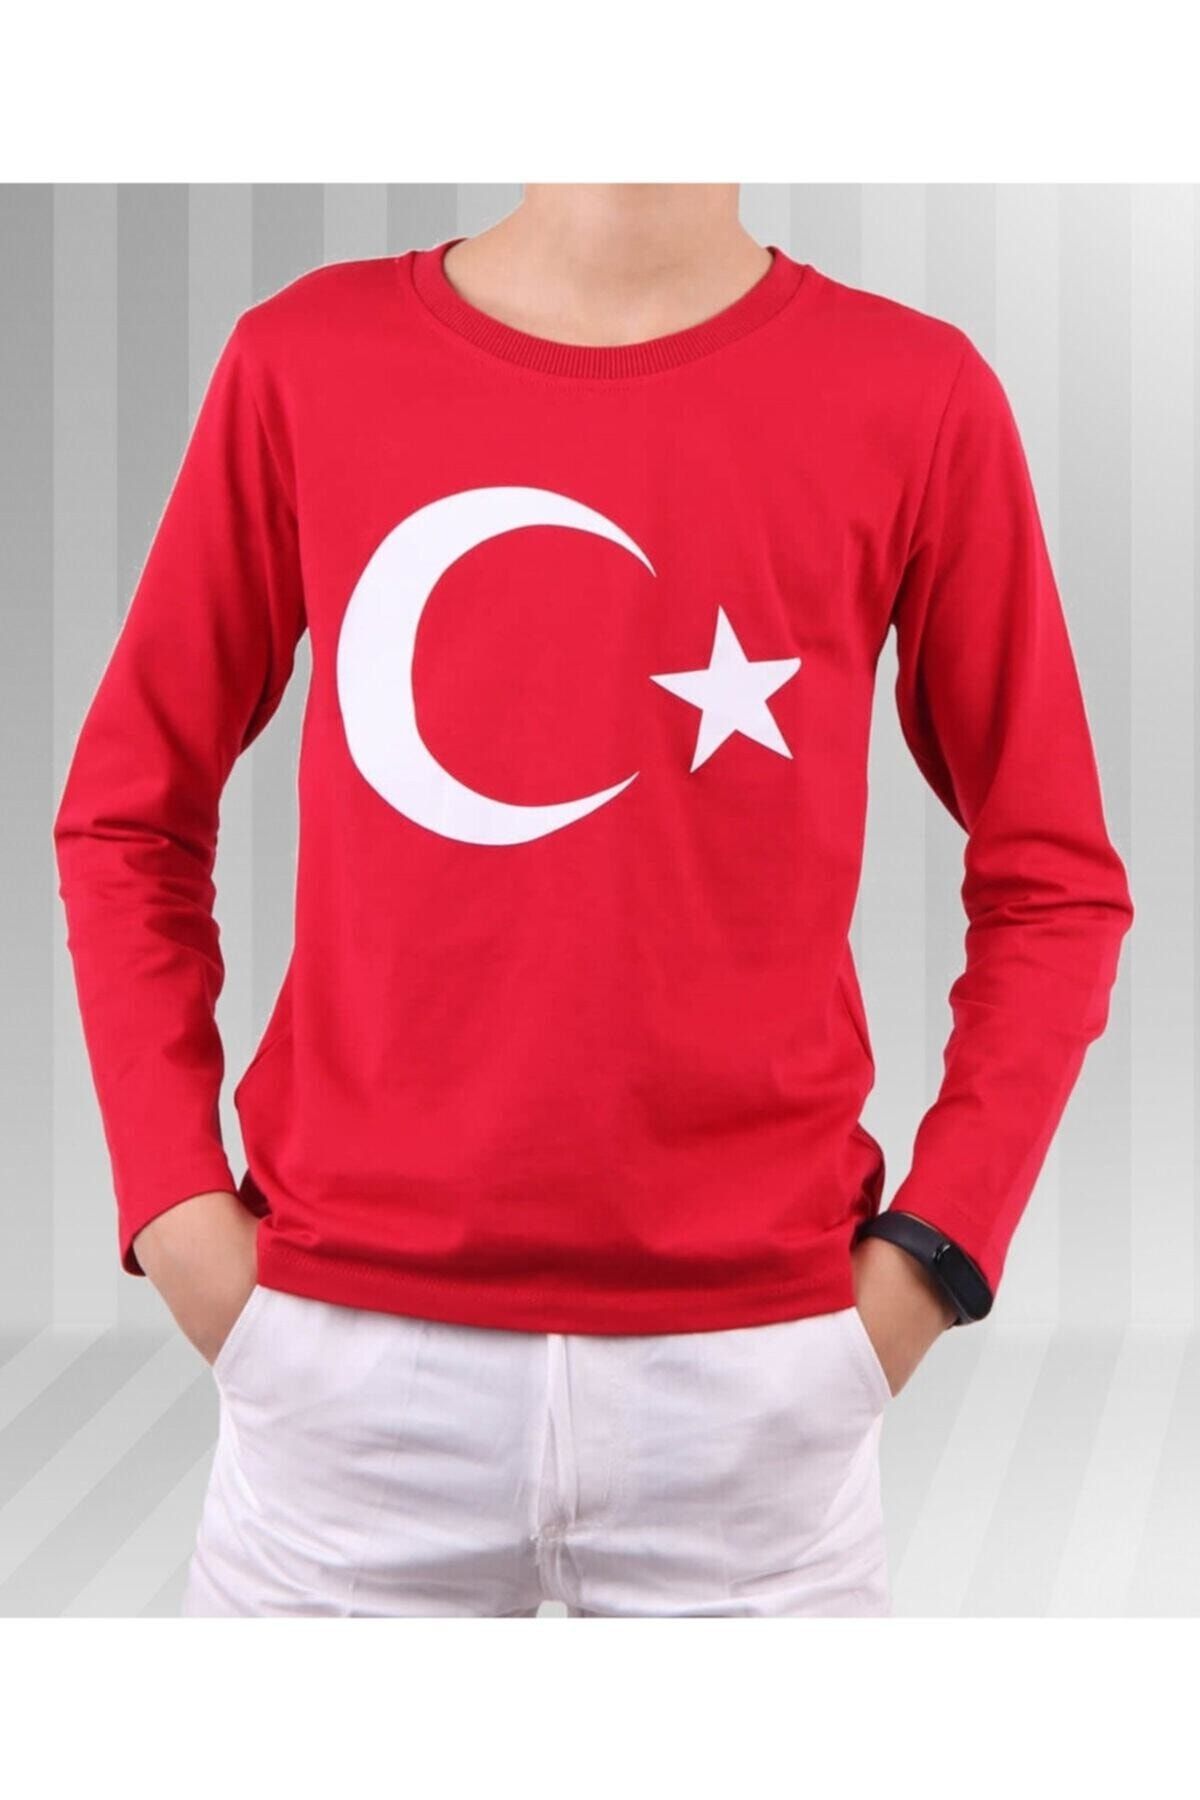 Dıgıl Kids Unisex Çocuk Kırmızı Ay Yıldız Türk Bayrağı Baskılı Uzun Kollu T-shirt